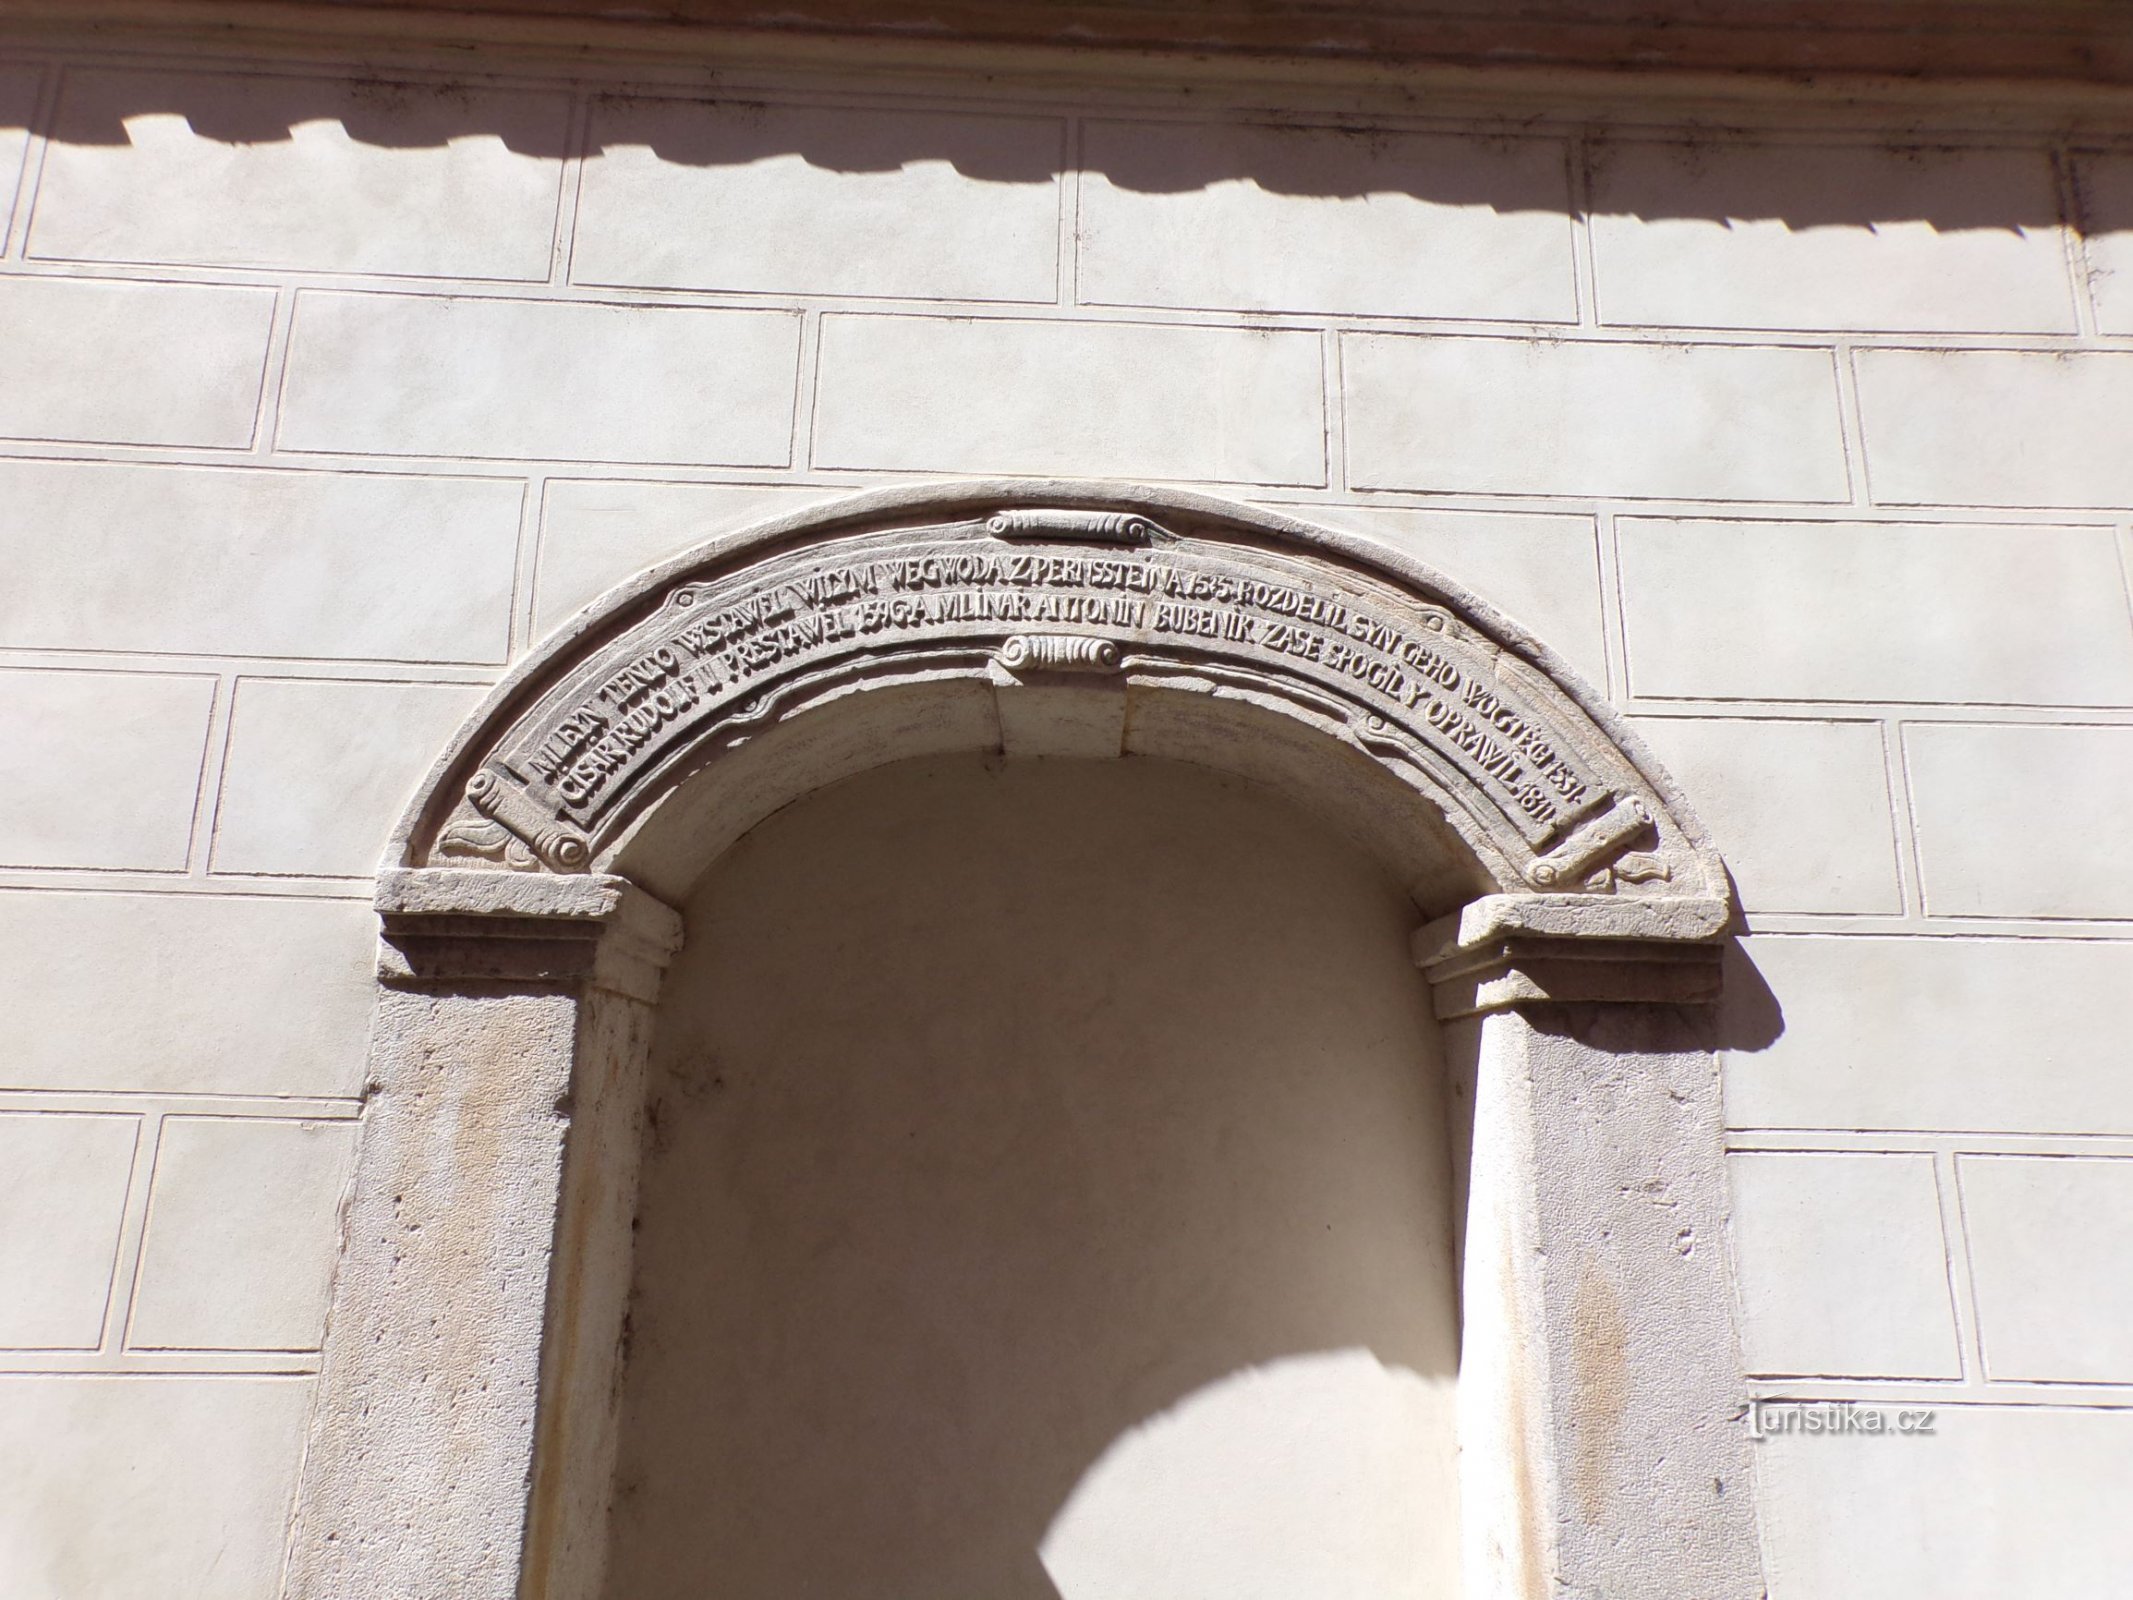 Unul dintre cartușele de pe zidul fostei Morii Imperiale (Pardubice, 10.5.2021)